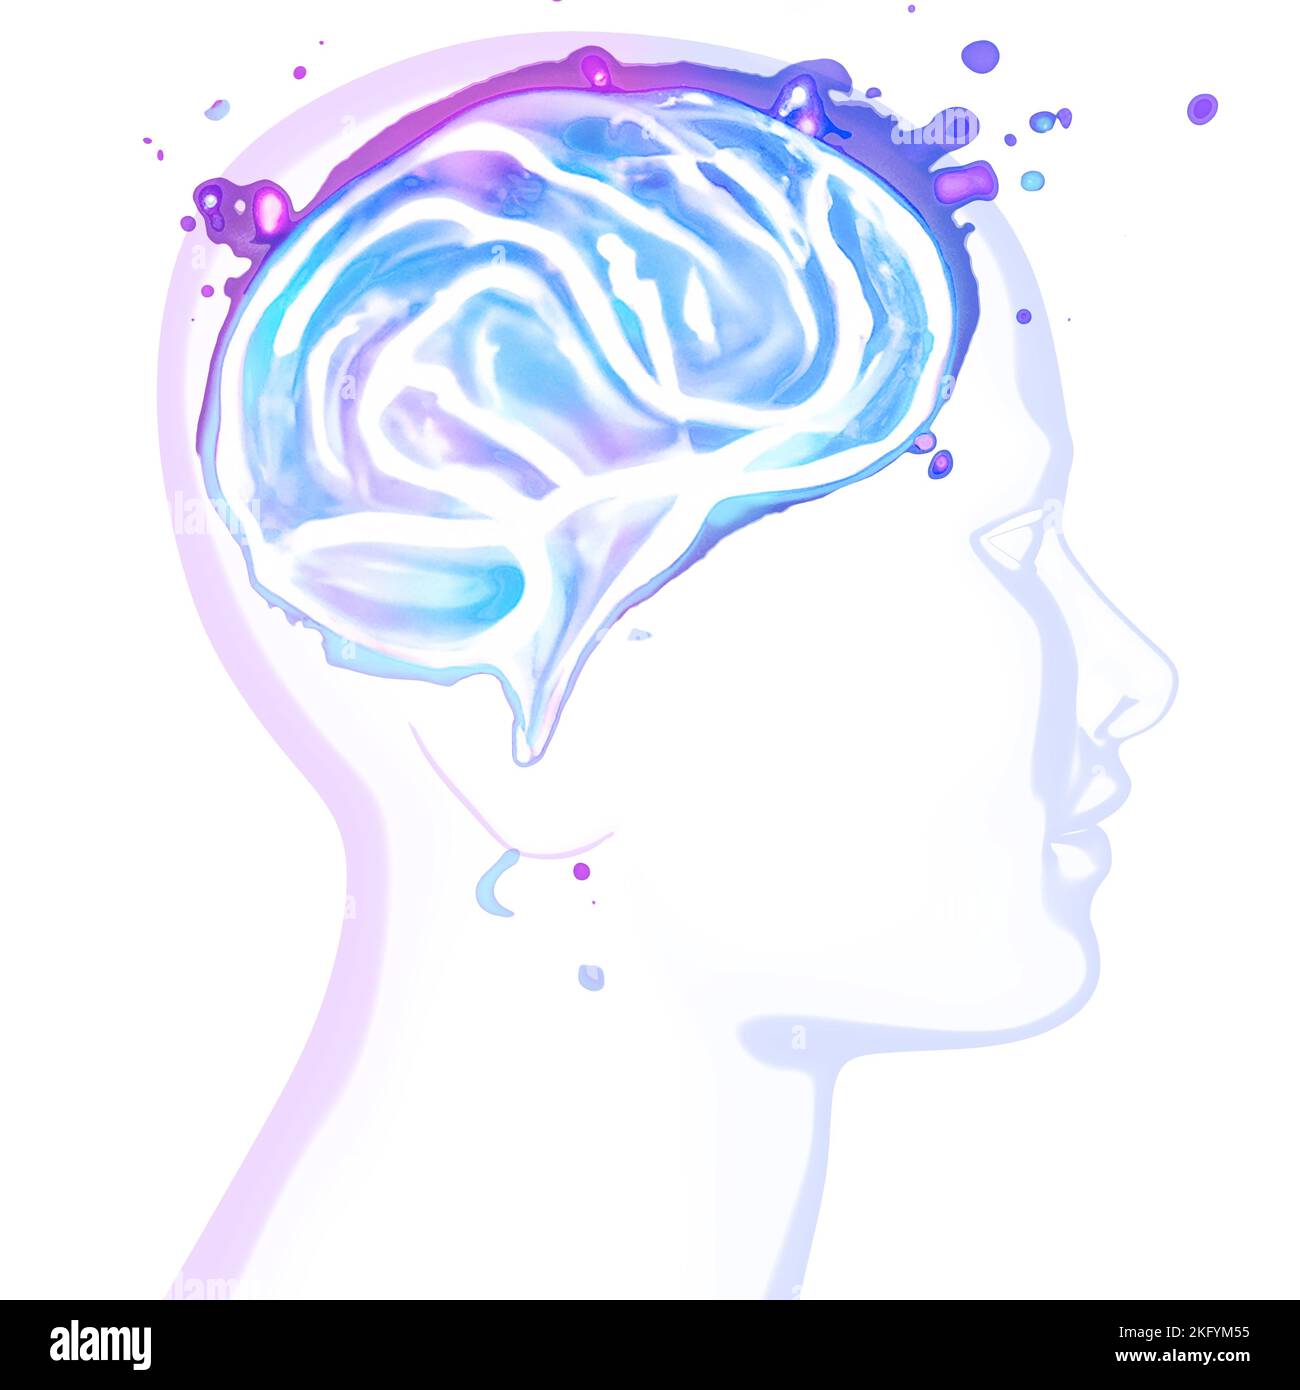 Neurologie, philosophie : connexions, développement de la pensée et de la réflexion, possibilités infinies du cerveau et de l'esprit. Face anatomique humaine Banque D'Images